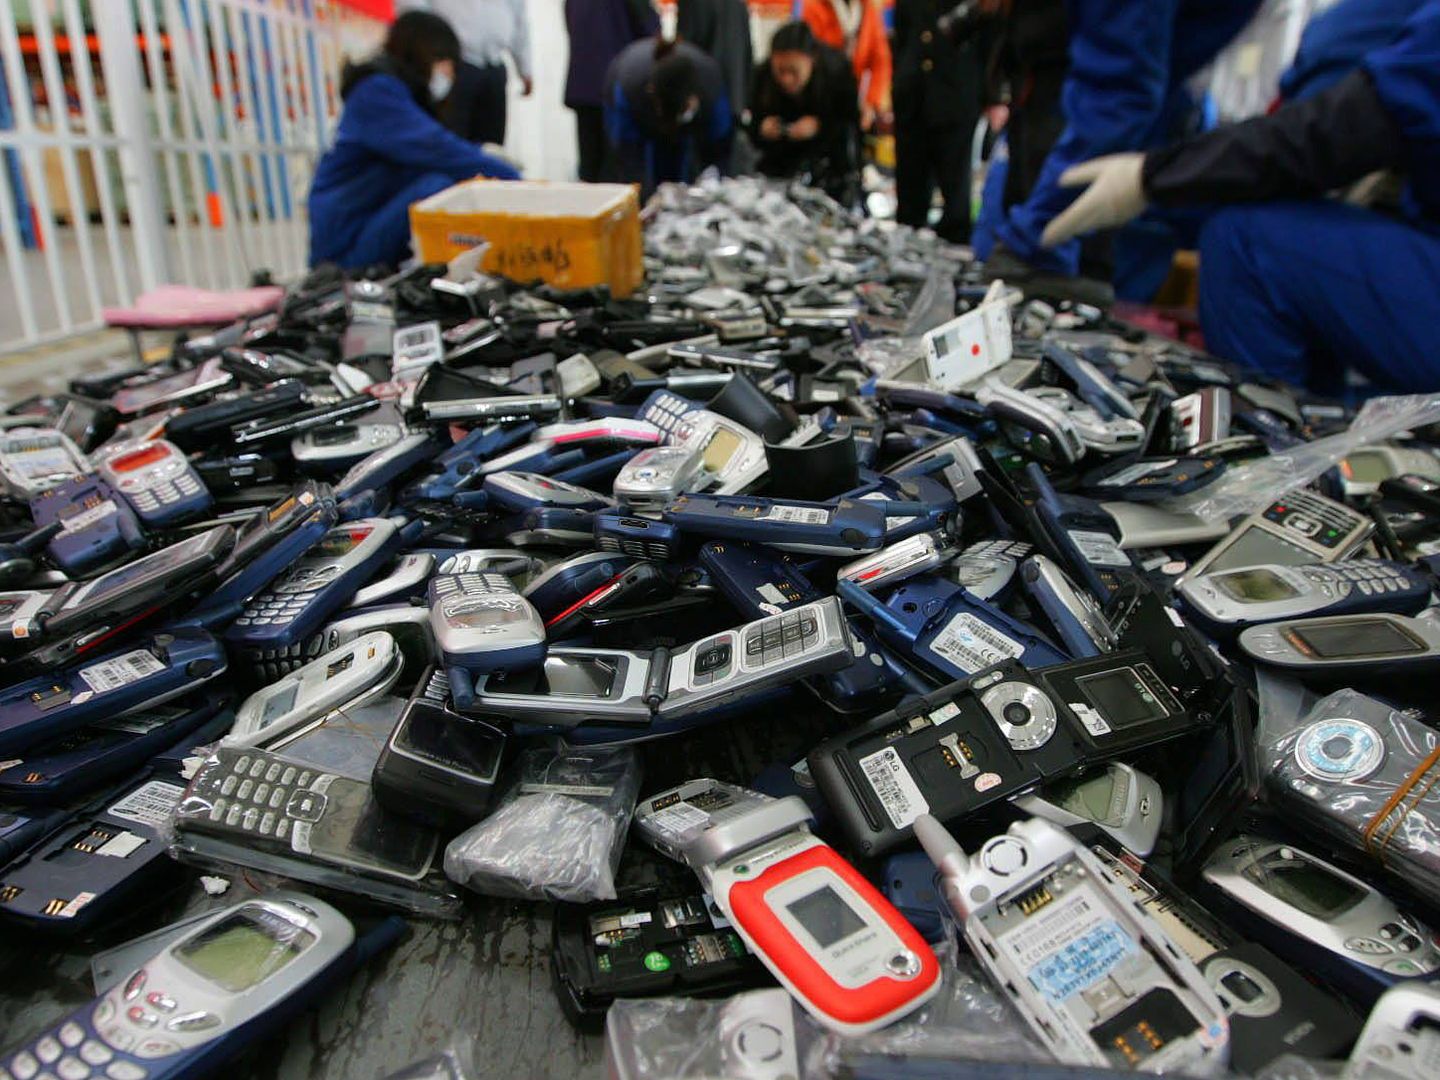 Reciclaje de teléfonos móviles. Foto: EFE/LAO CAI